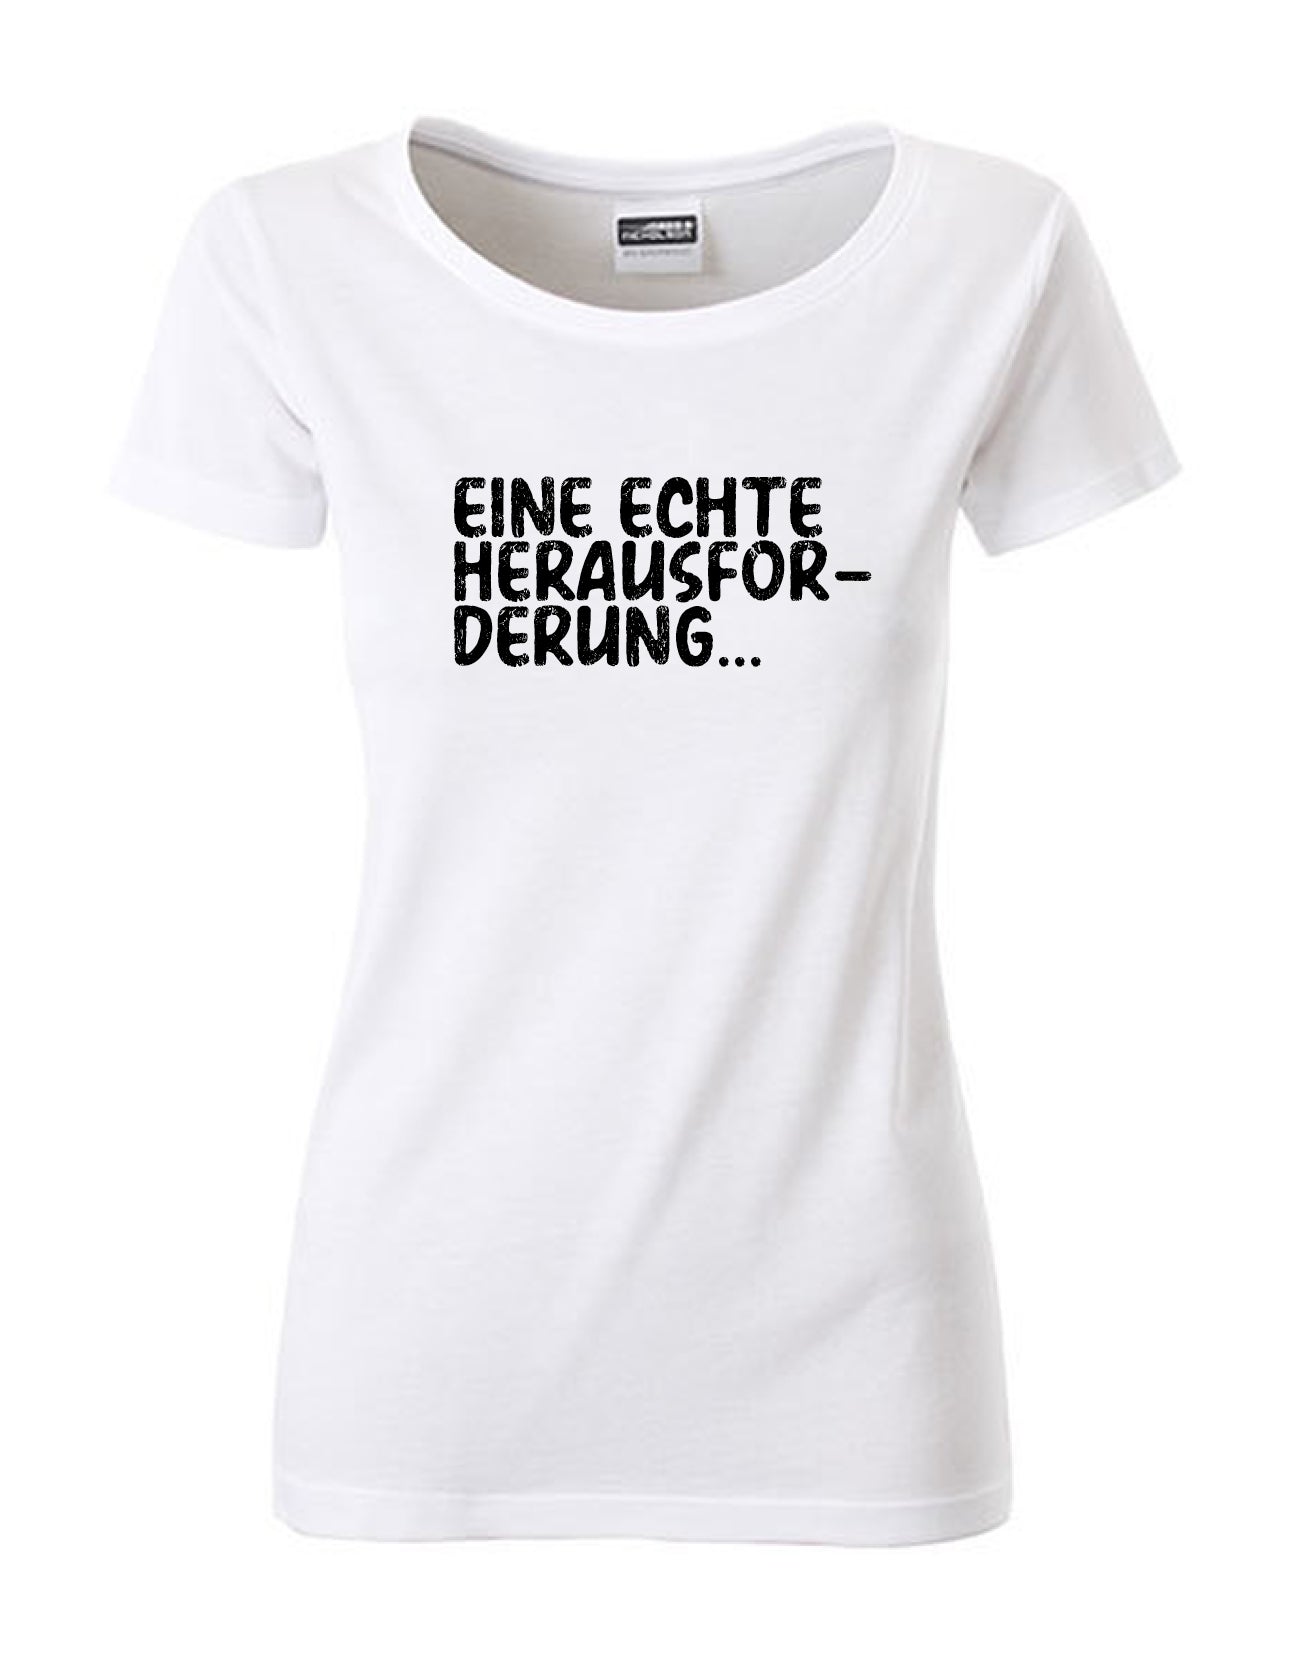 T-Shirt Frauen >> EINE ECHTE HERAUSFORDERUNG...